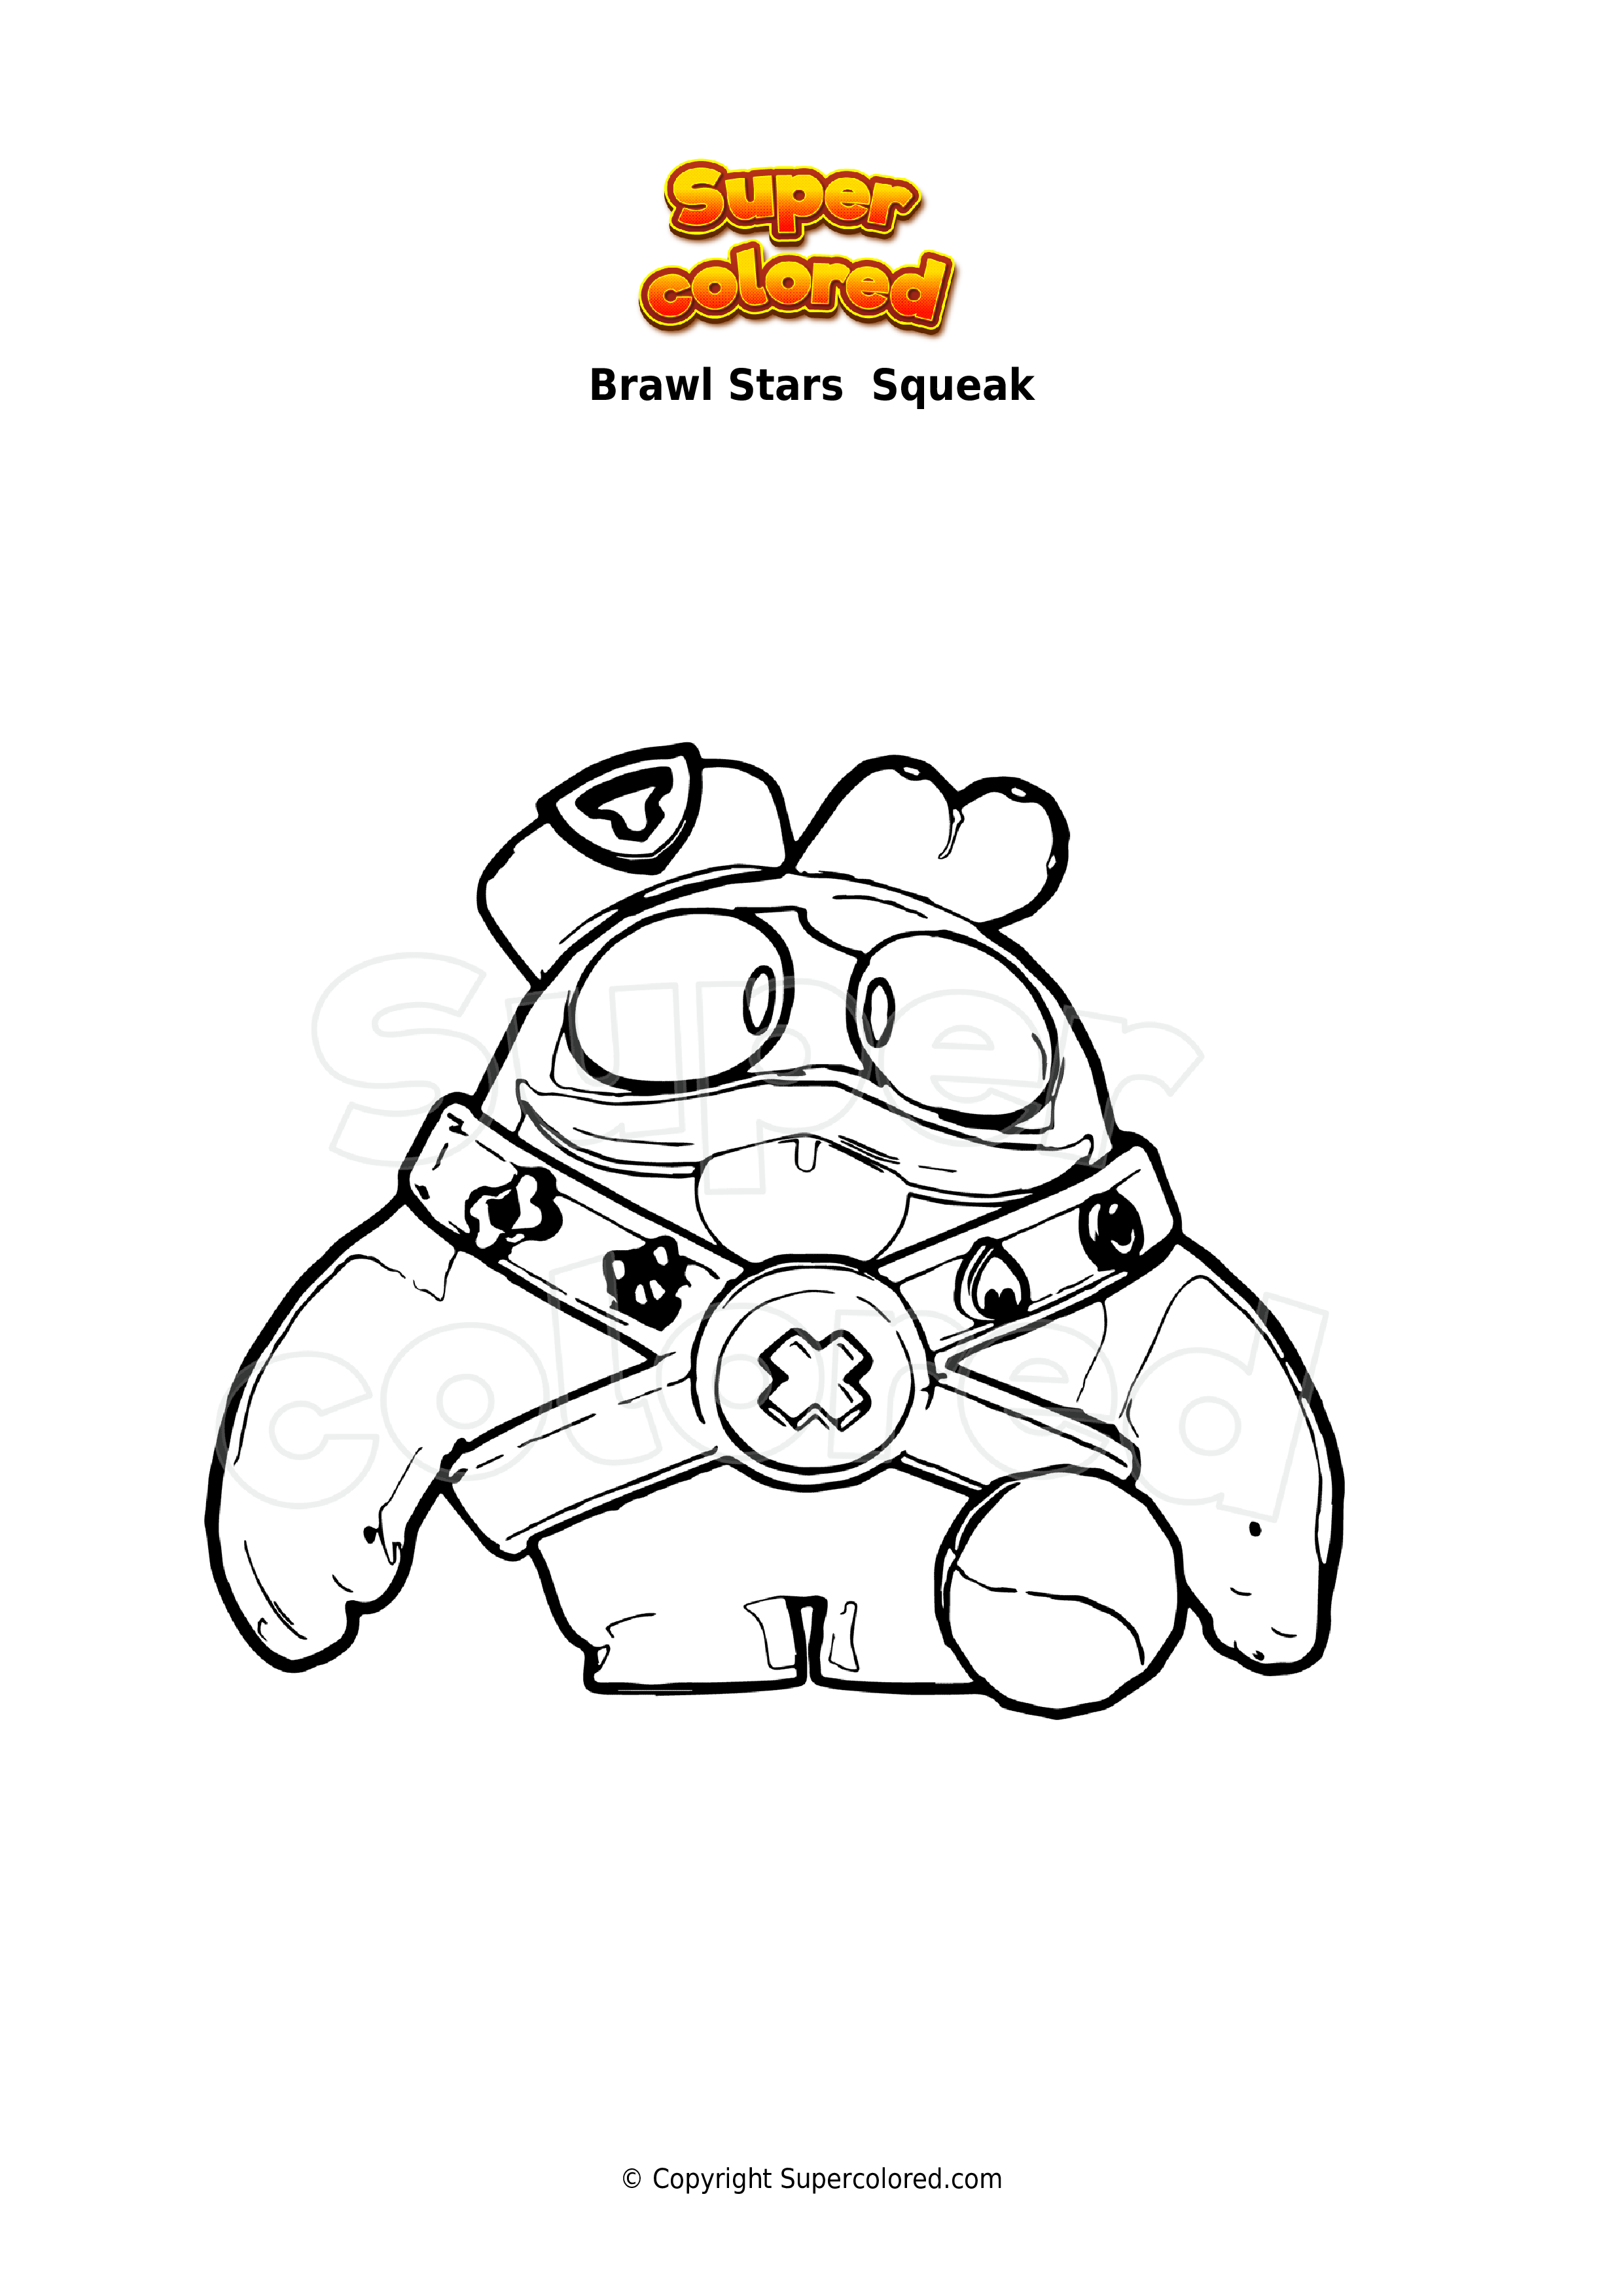 Disegno Da Colorare Brawl Stars Squeak Supercolored Com - disegni di personaggi di brawl stars